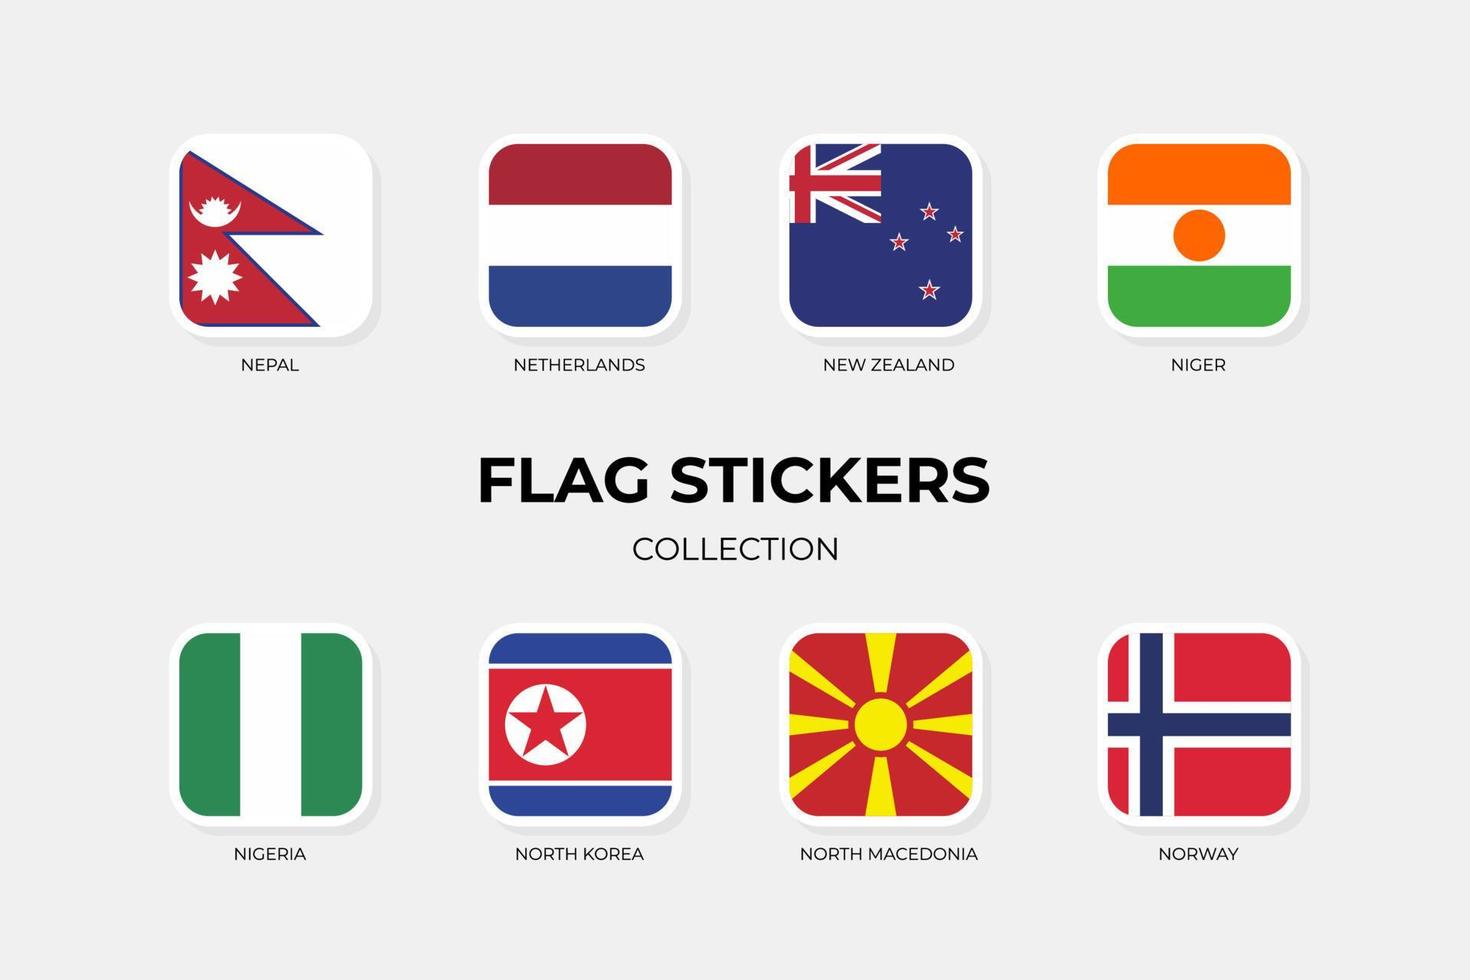 flaggklistermärken för nepal, nederländerna, nya zeeland, niger, nigeria, nordkorea, nordmakedonien, norge vektor